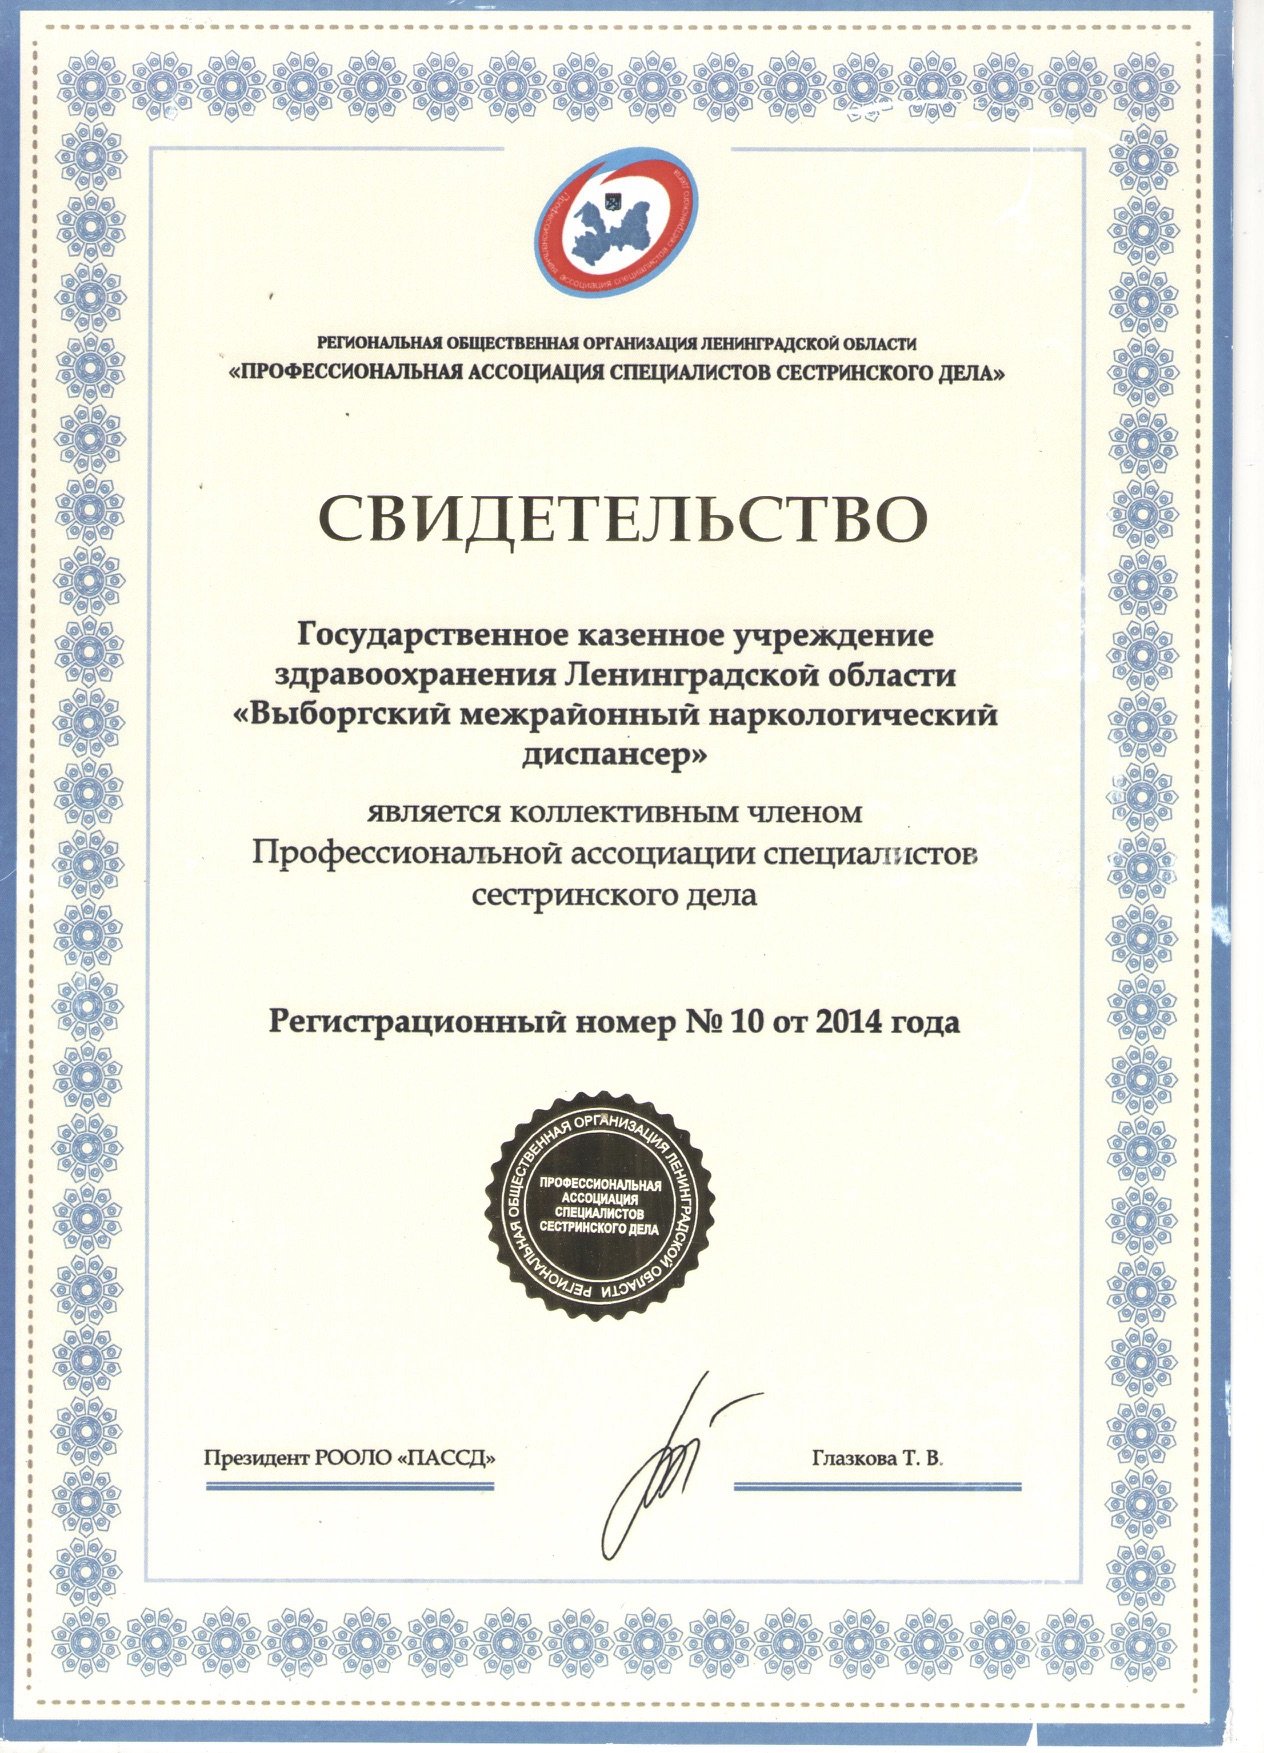 ЛОГБУЗ "ВМНД": сертификат